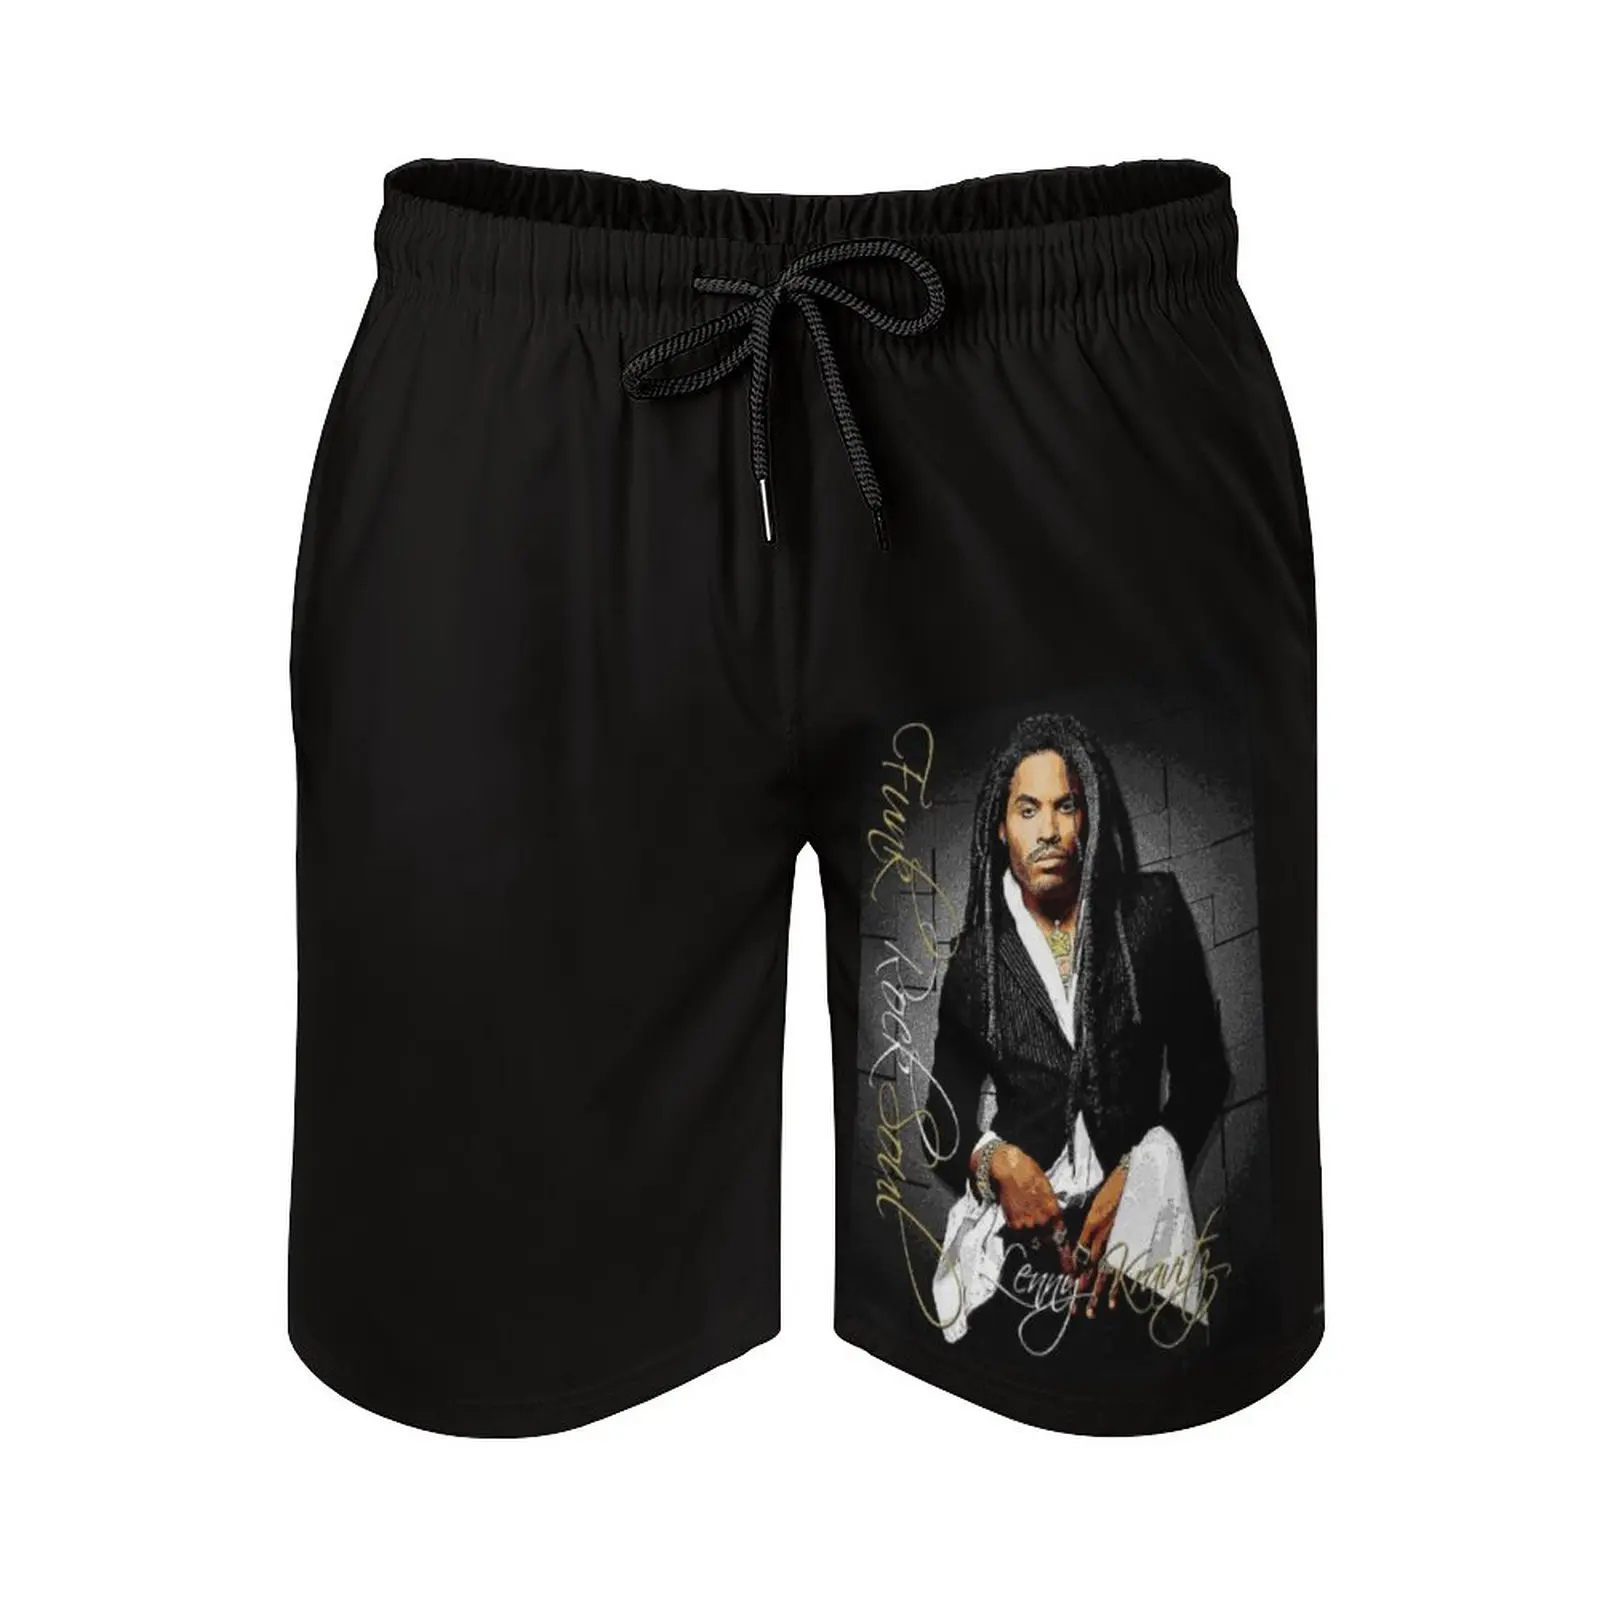 

Мужские пляжные шорты Lenny Kravitz «Funk Rock Soul», с сетчатой подкладкой, шорты для серфинга, плавки, поп-музыка, пляжные шорты